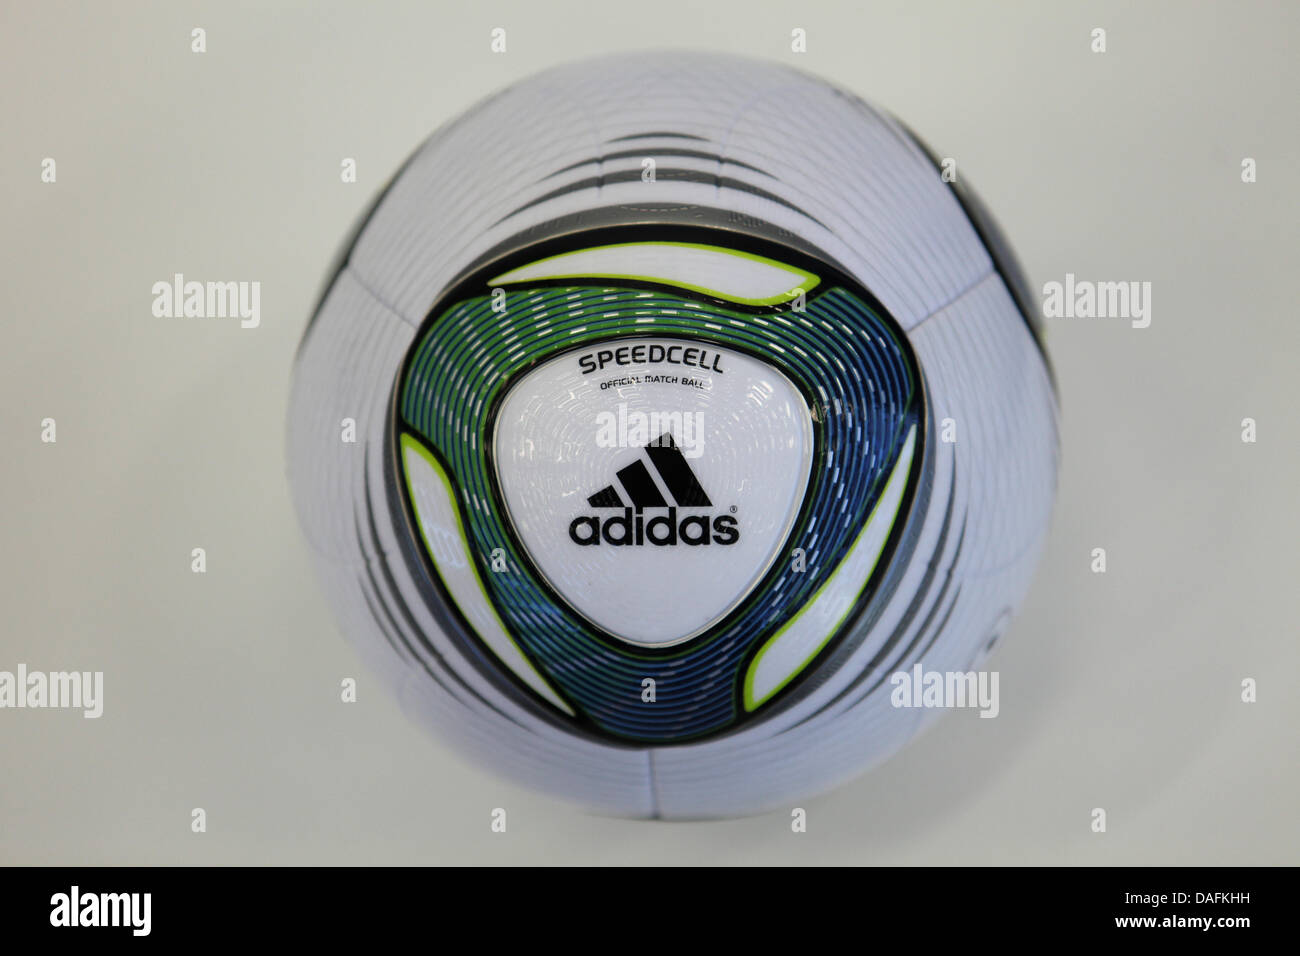 Le ballon officiel de la Coupe du Monde féminine de la fifa, appelé par adidas  Speedcell, est présenté à Herzogenaurach, en Allemagne, 2 mars 2011. Photo  : Daniel Karmann Photo Stock - Alamy